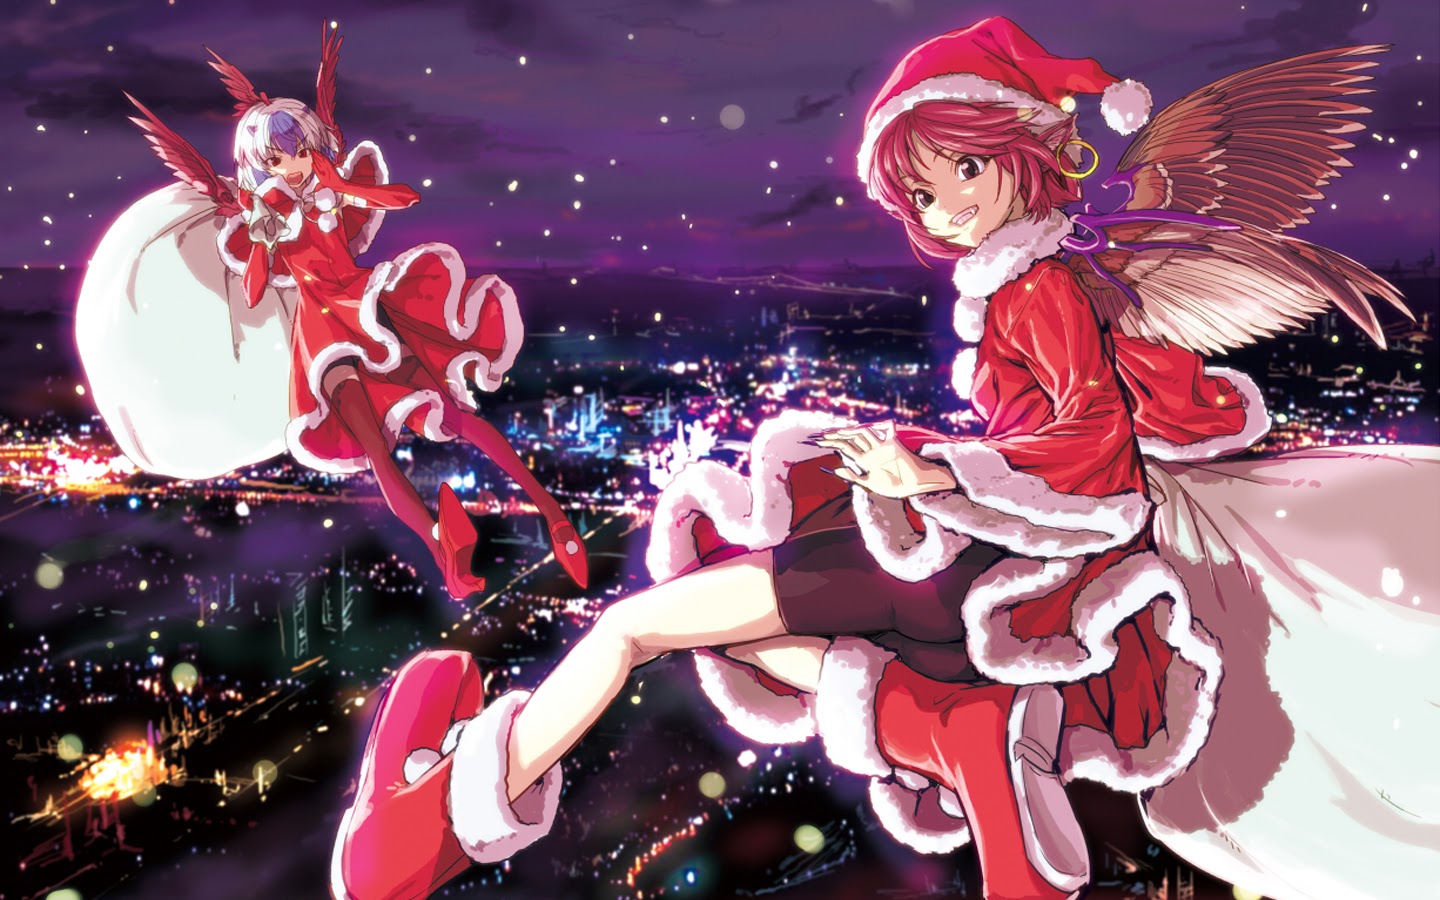 58 Anime Christmas Wallpapers On Wallpapersafari